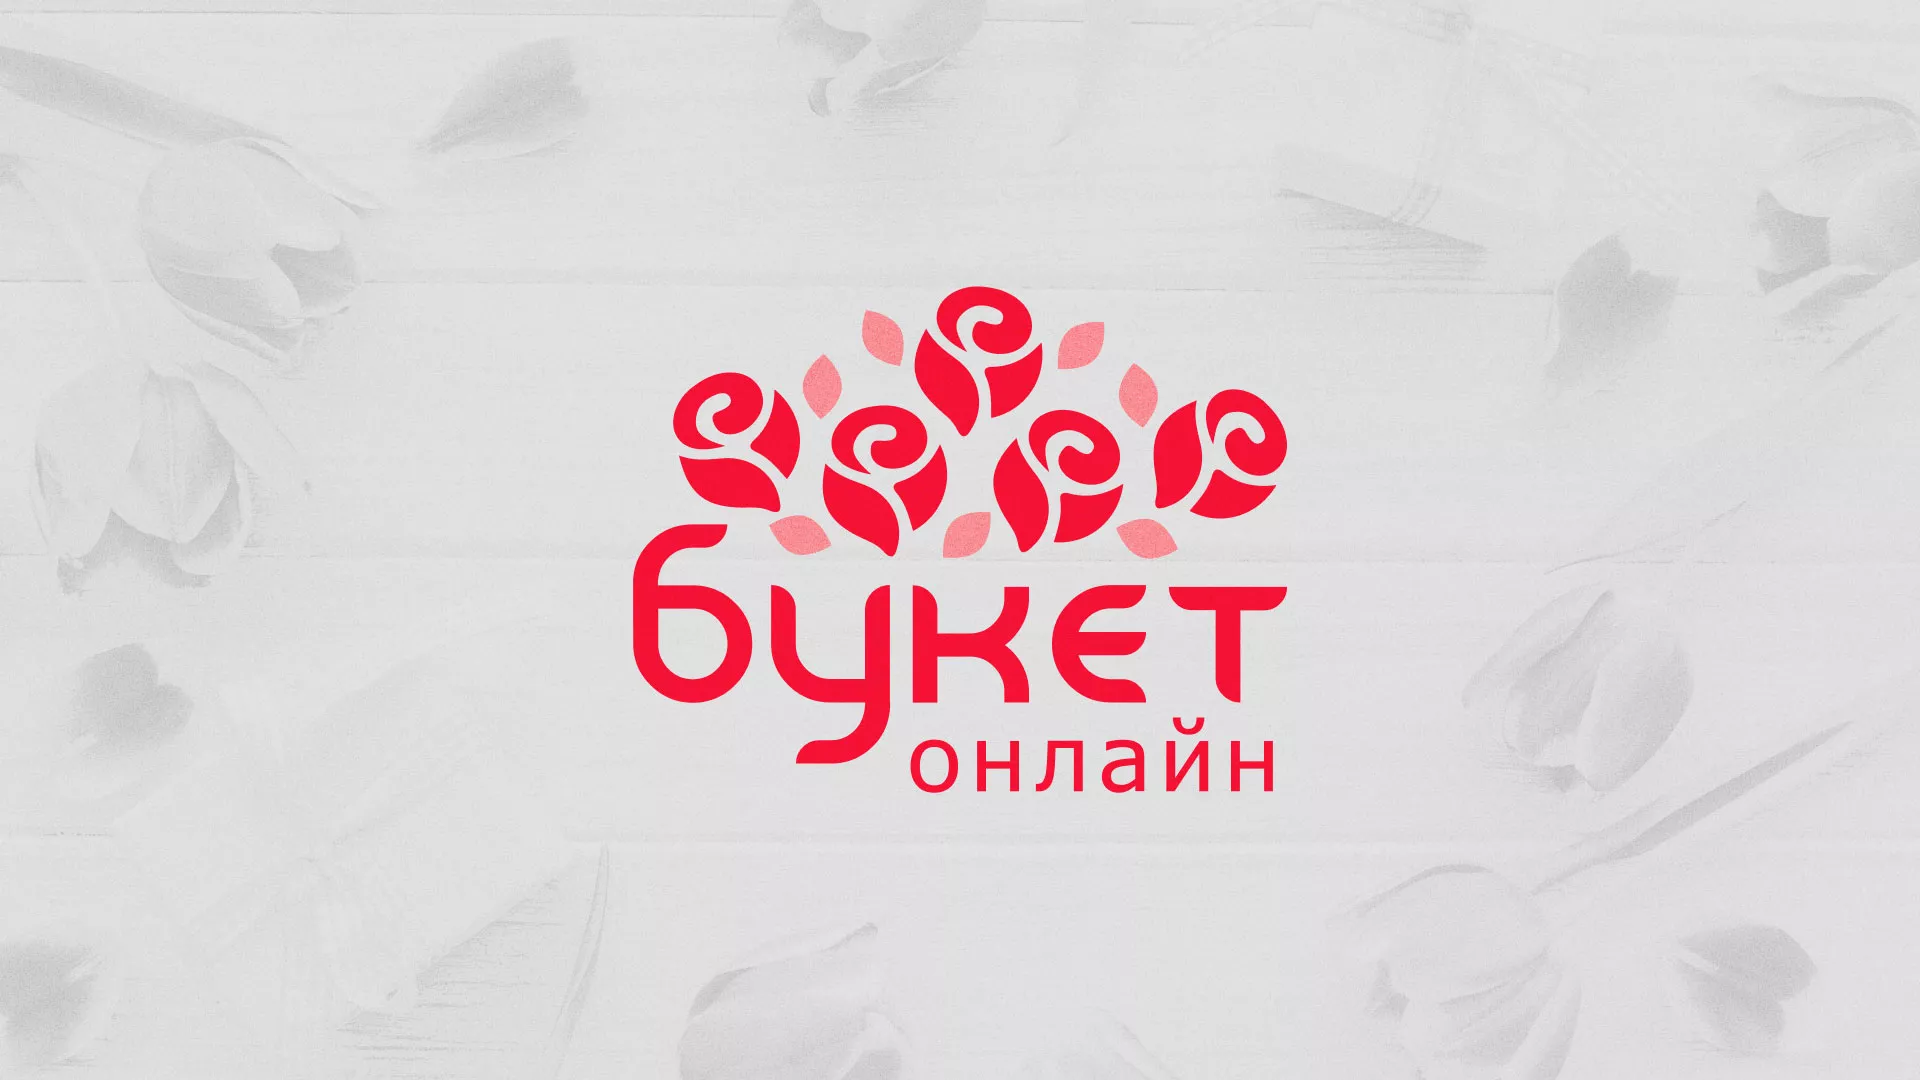 Создание интернет-магазина «Букет-онлайн» по цветам в Домодедово